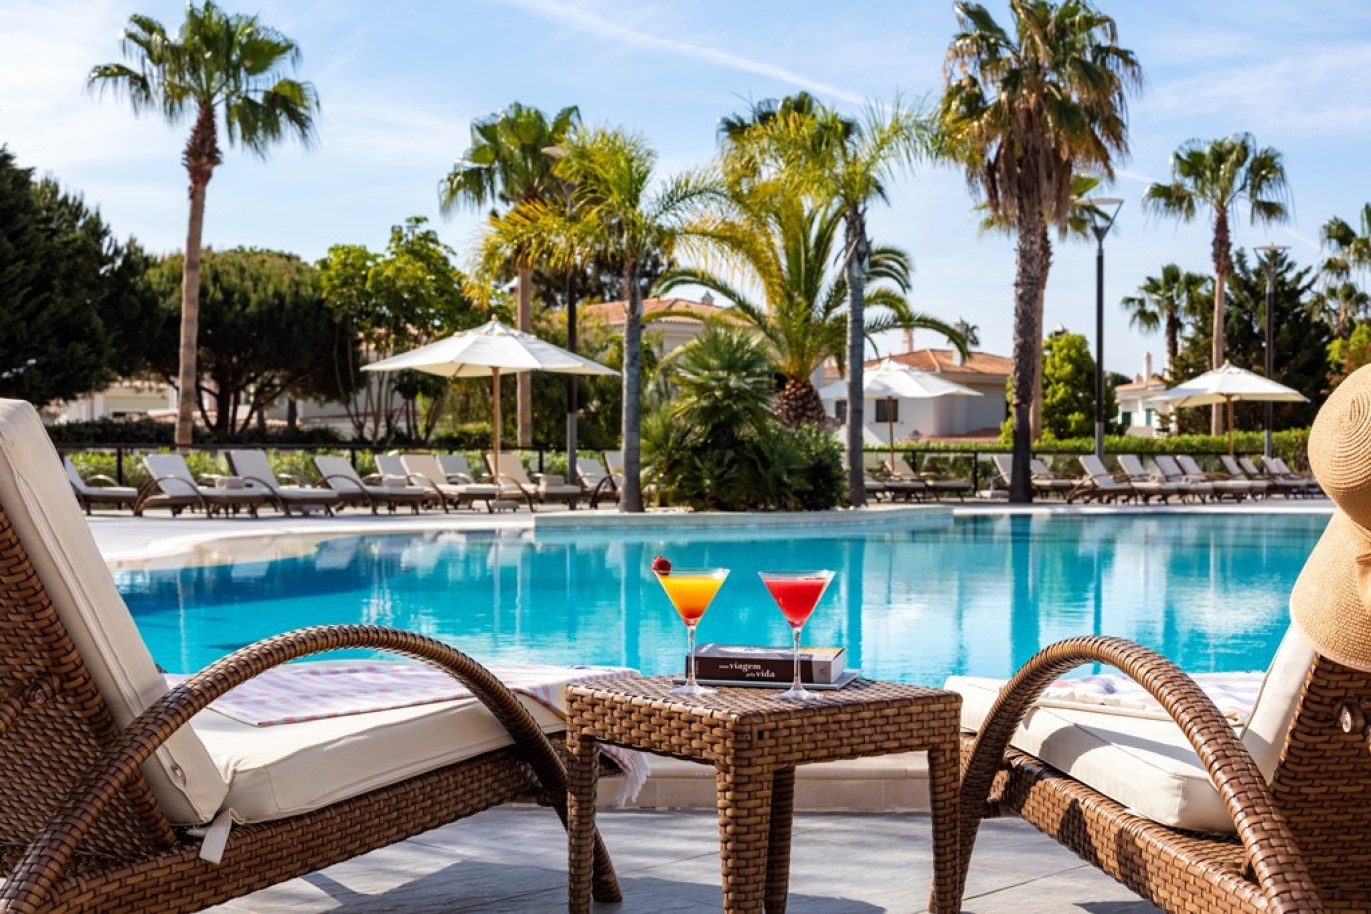 Apartamento, 2 quartos, piscina, para venda na Quinta do Lago, Algarve_263383